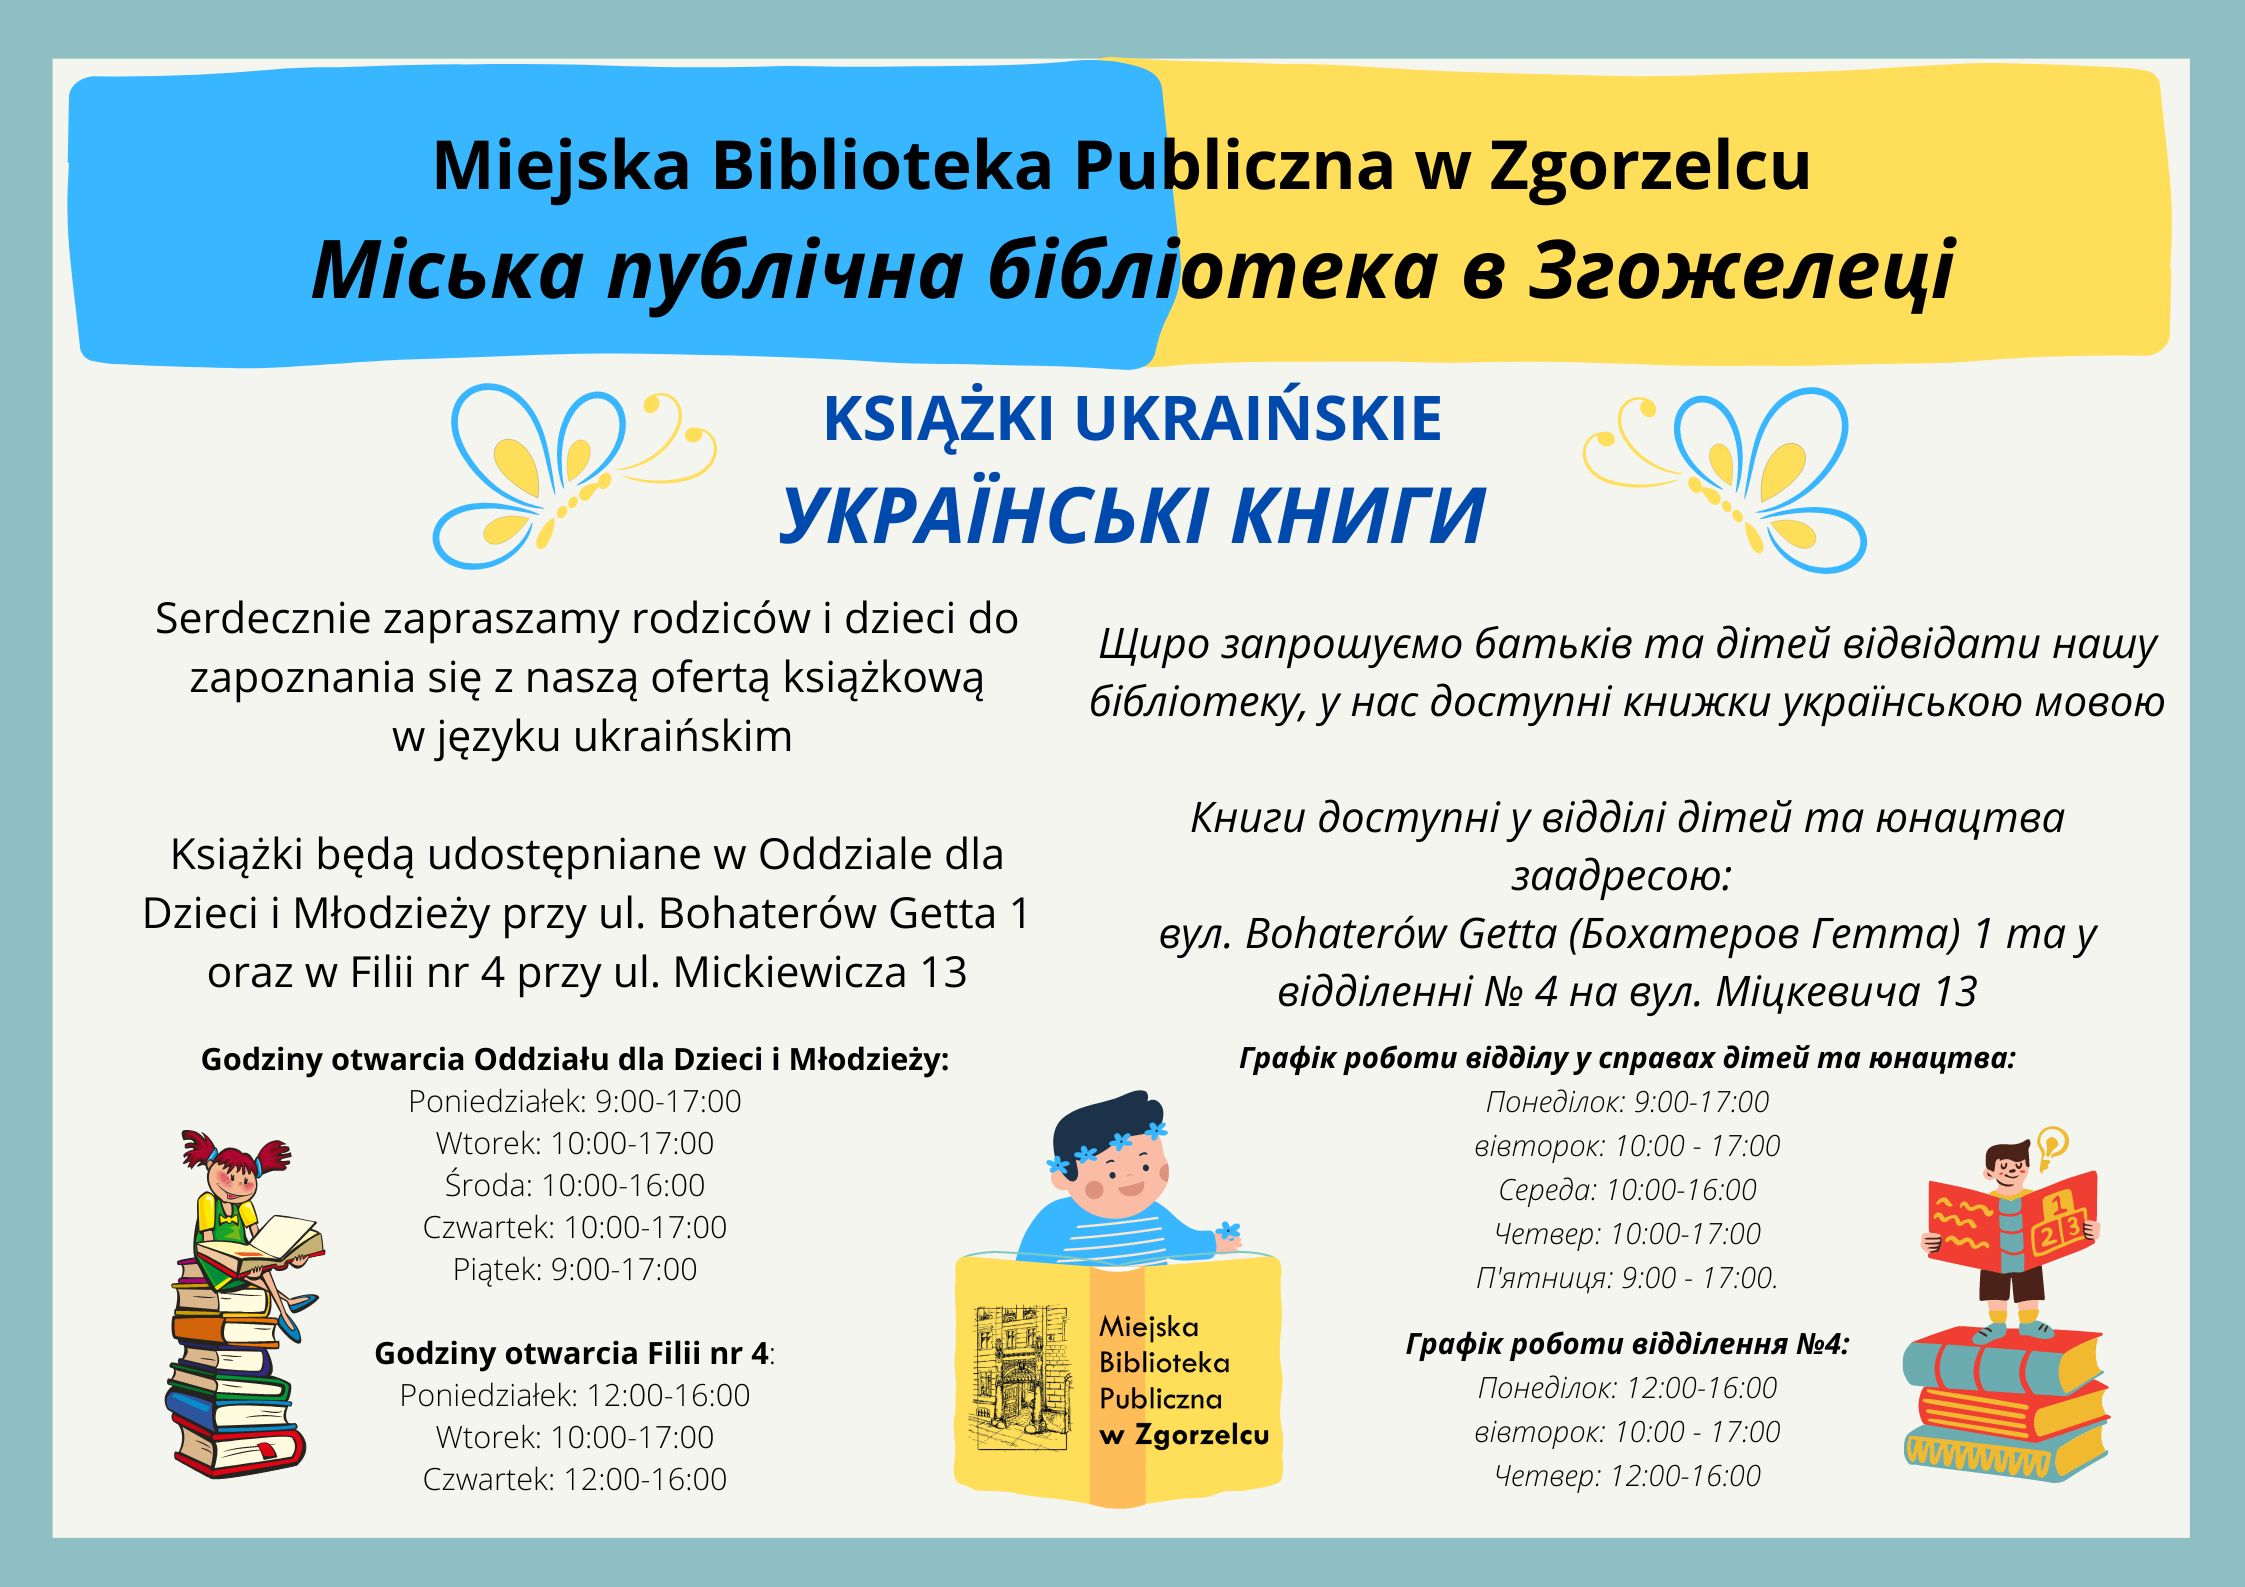 Plakat informacyjny w języku polskim i ukraińskim o ofercie książkowej w języku ukraińskim. Plakat jest jednocześnie odnośnikiem do artykułu "Książki w języku ukraińskim".